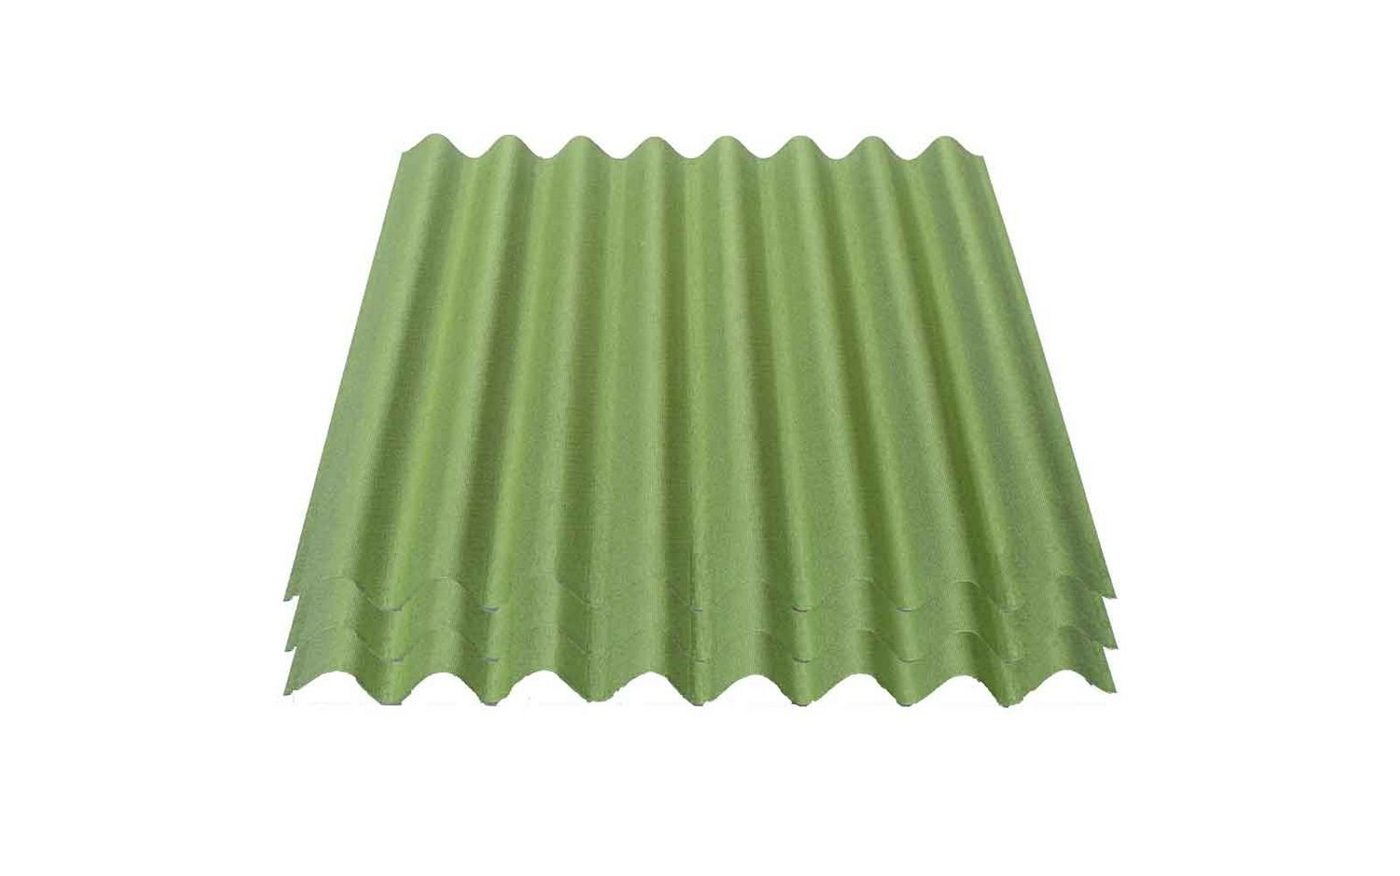 Onduline Dachpappe Onduline Easyline Dachplatte Wandplatte Bitumenwellplatten Wellplatte 3x0,76m² - grün, wellig, 2.28 m² pro Paket, (3-St) von Onduline